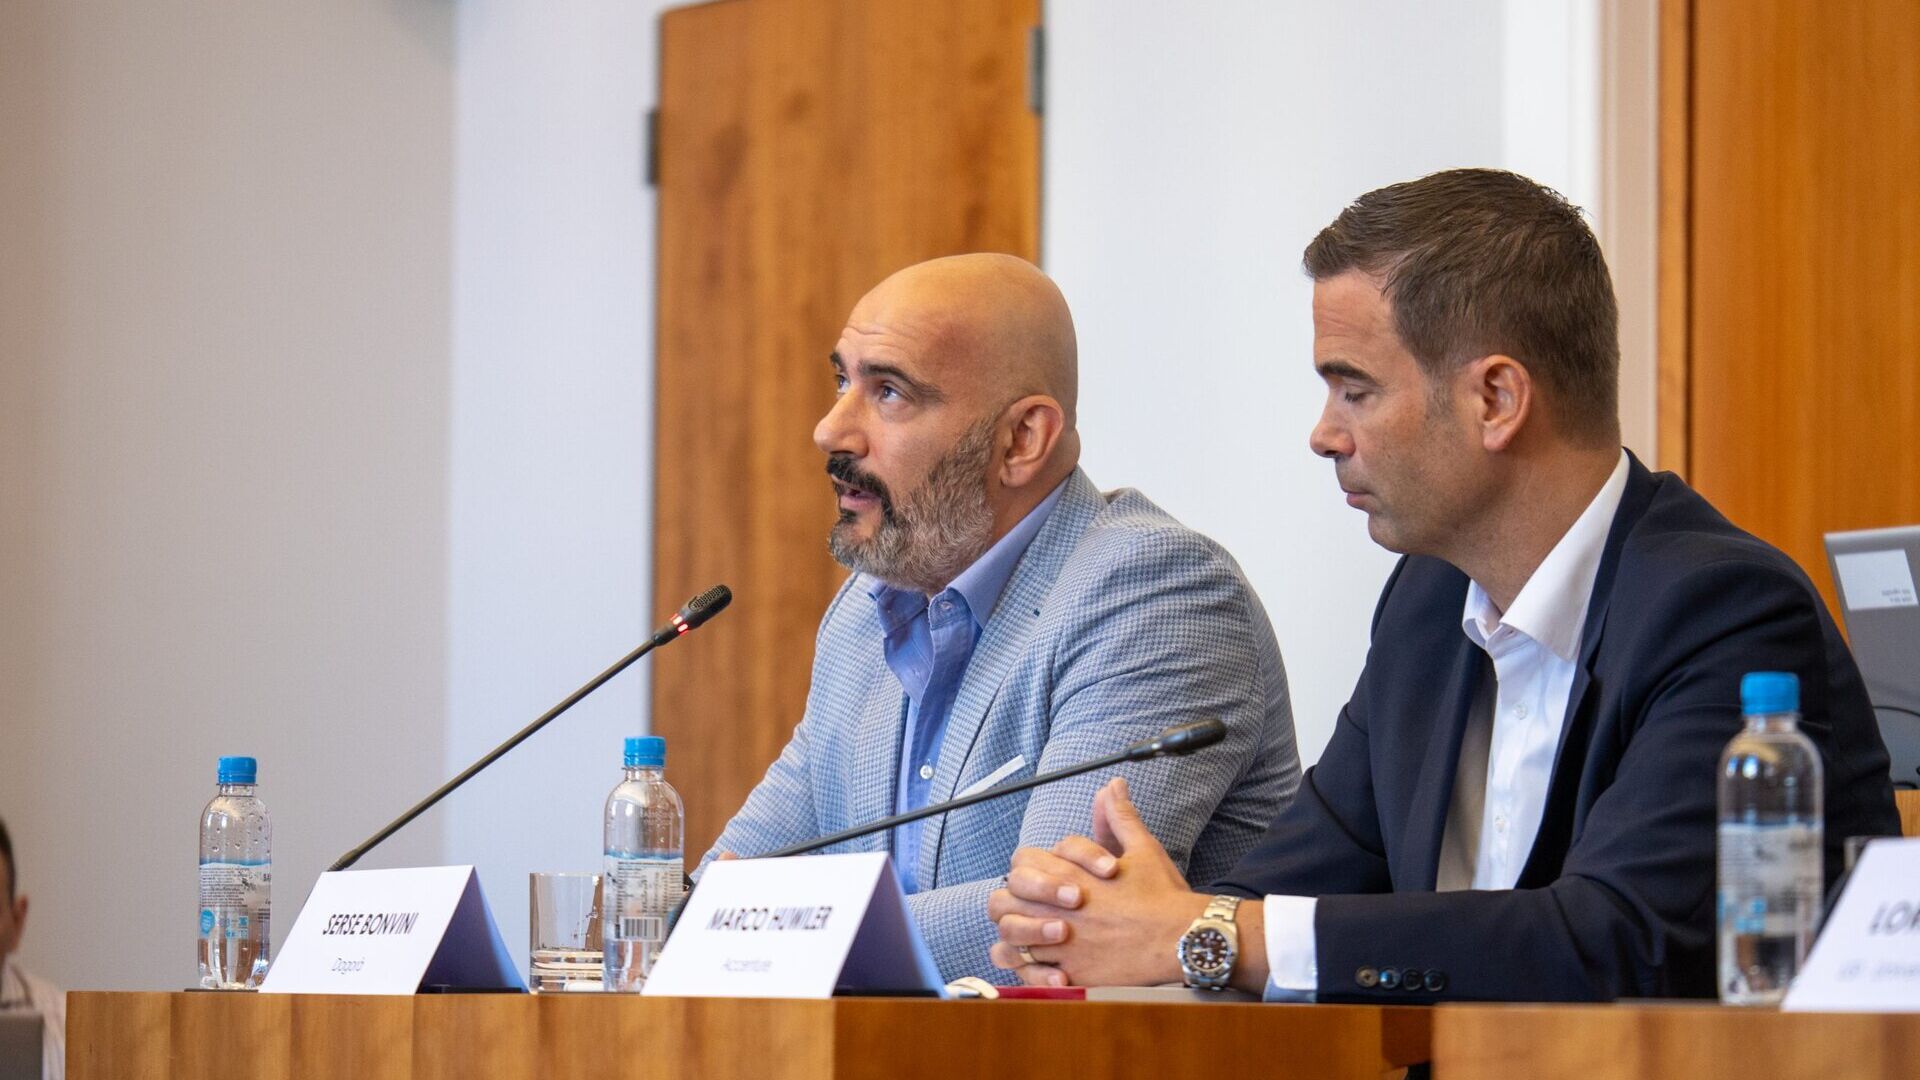 LTCC : Serse Bonvini, directeur général du Dagorà Lifestyle Innovation Hub, et Marco Huwiler, Country Manager d'Accenture Suisse